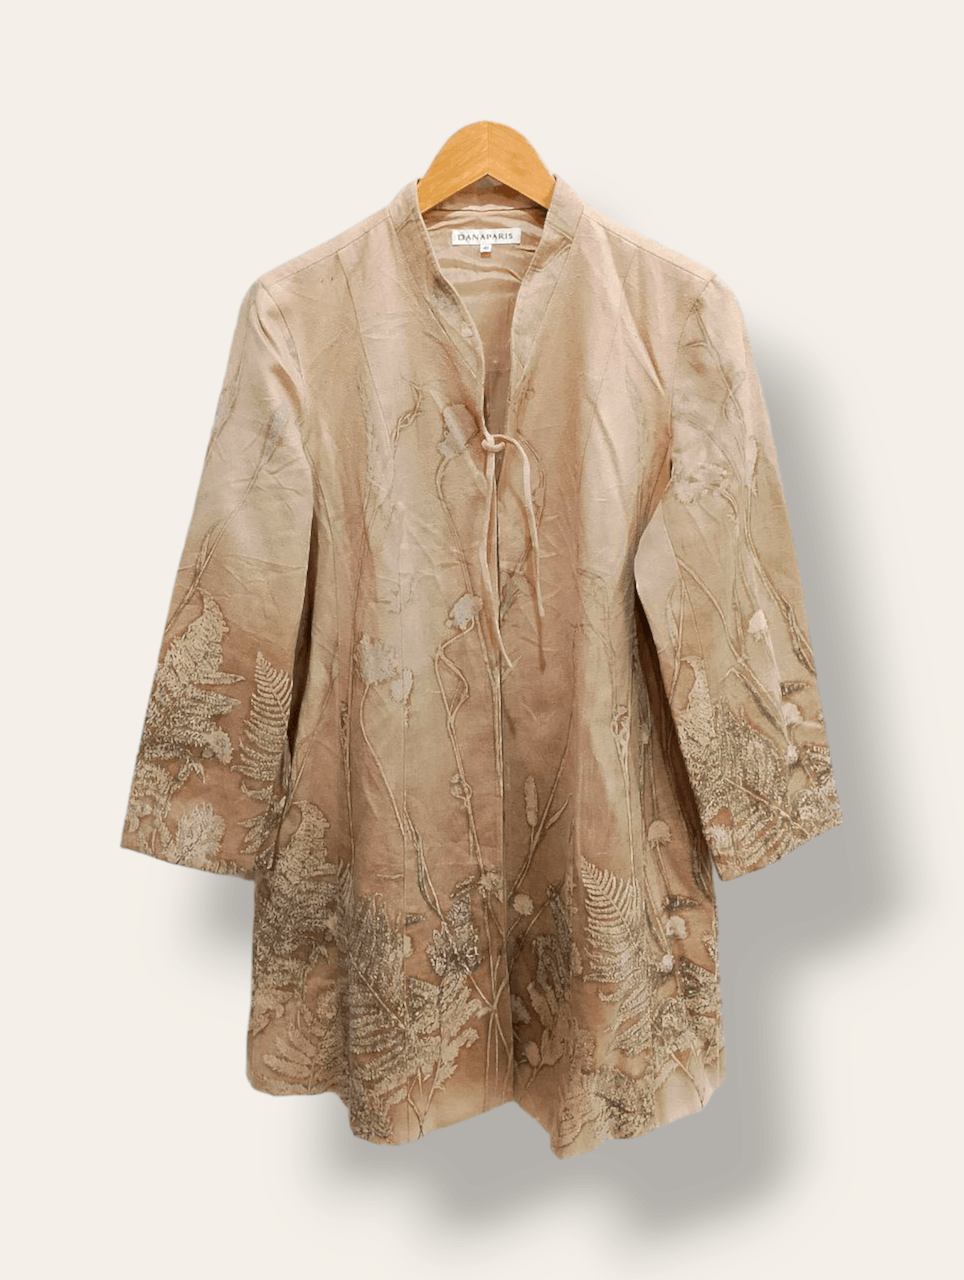 Vintage DANA PARIS Floral Jacquard Style Dress Coat Jacket - 1